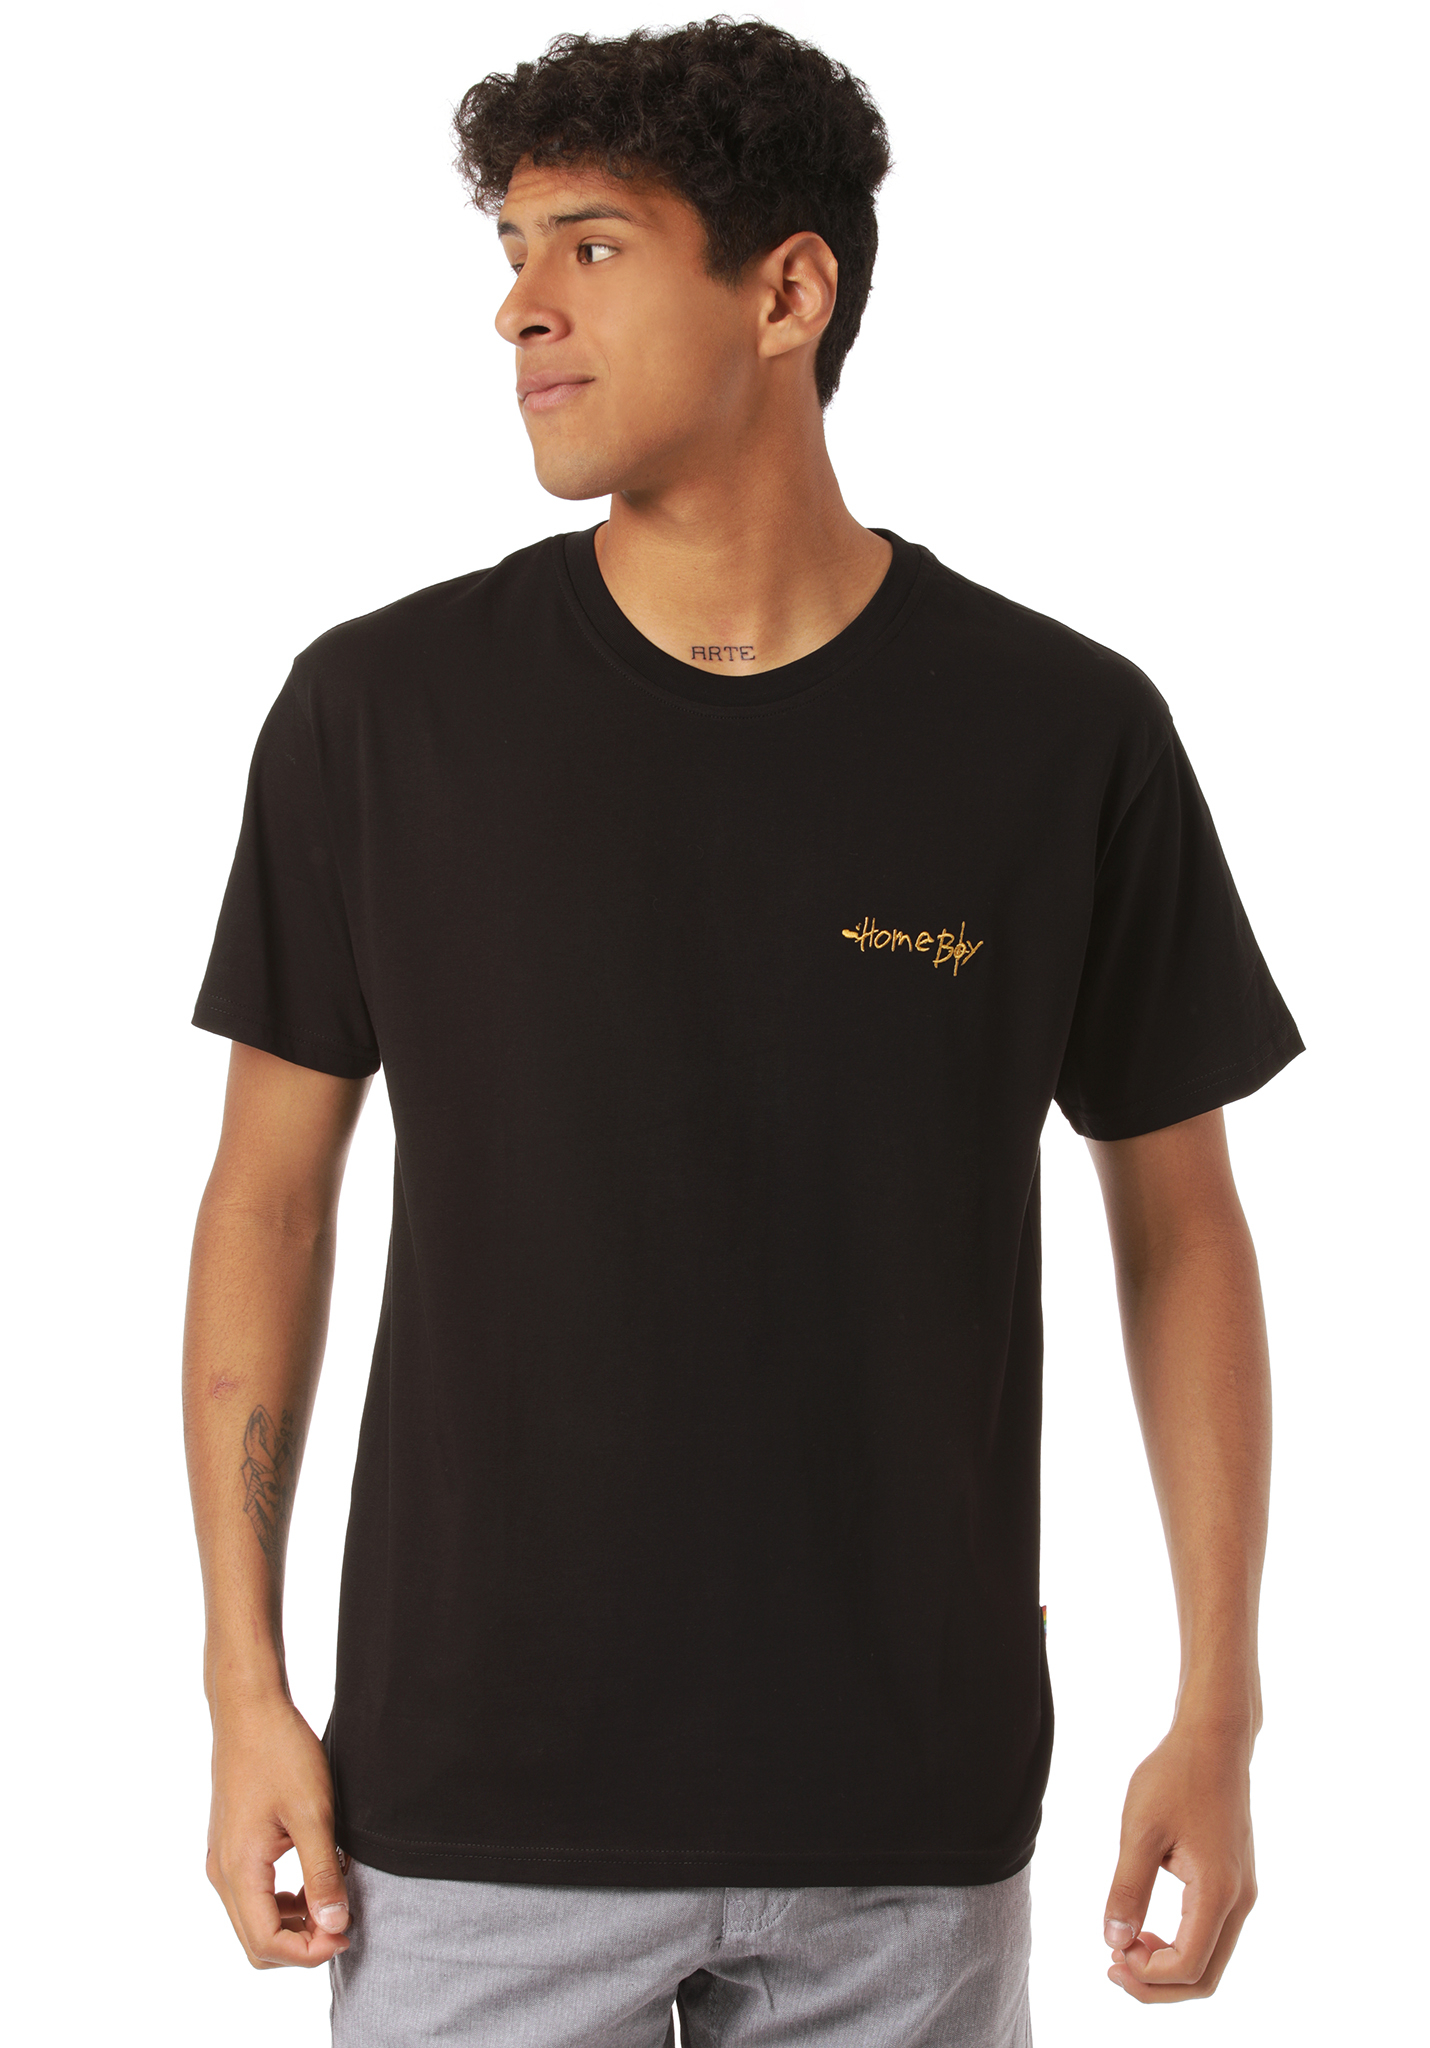 Homeboy Pencil T-Shirt black L